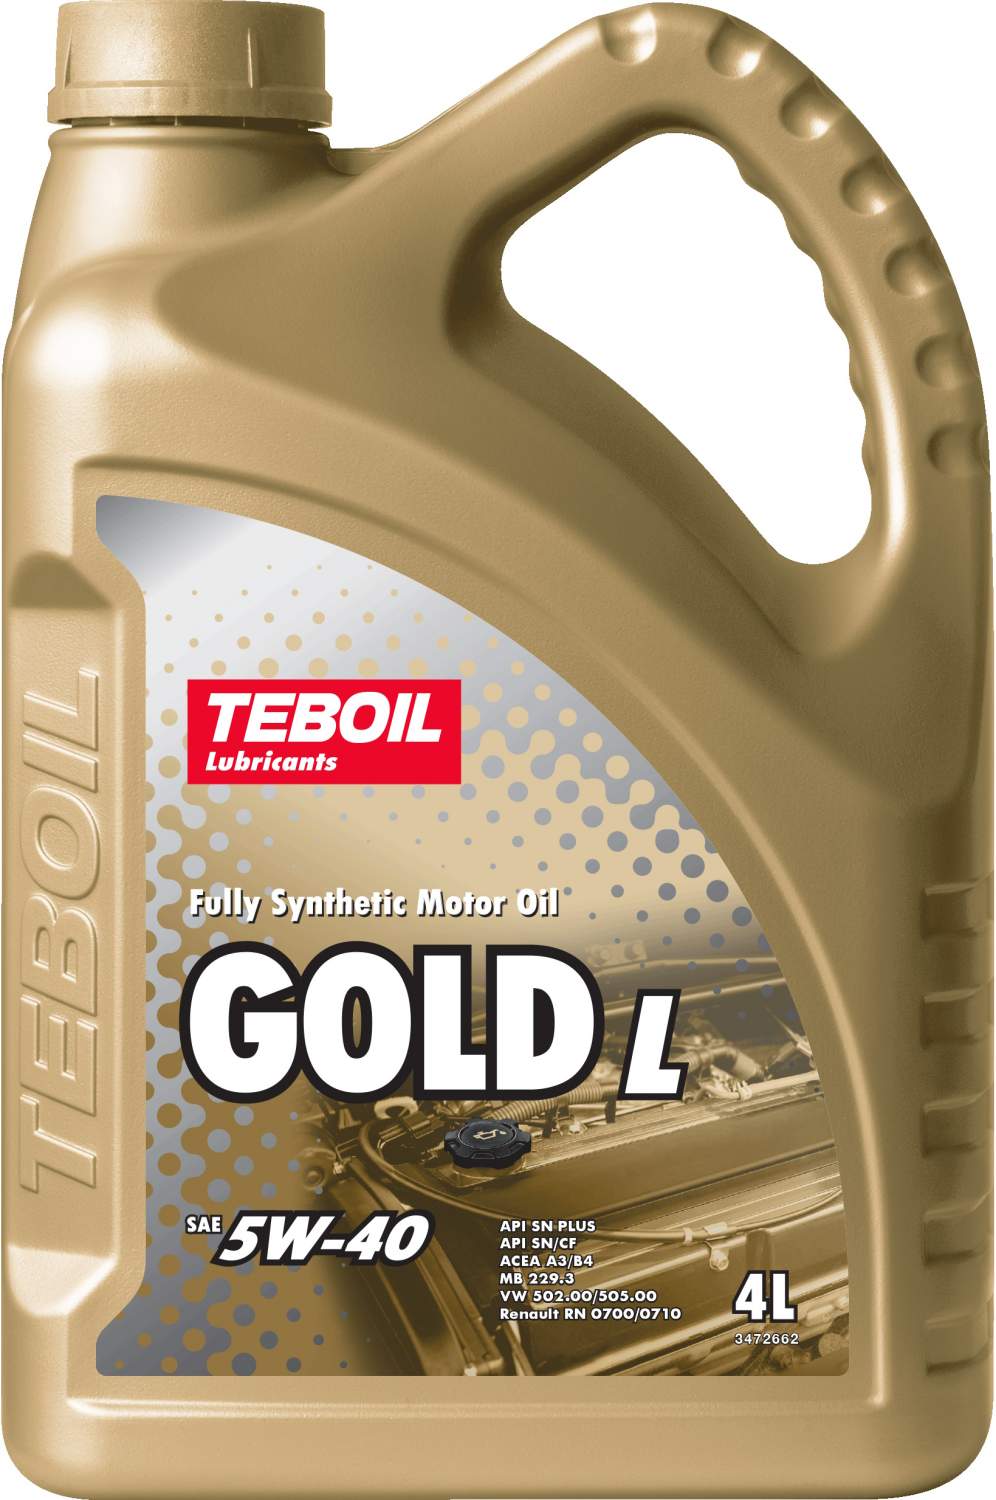 Моторные масла Teboil -  моторное масло Тебойл, цены  на .